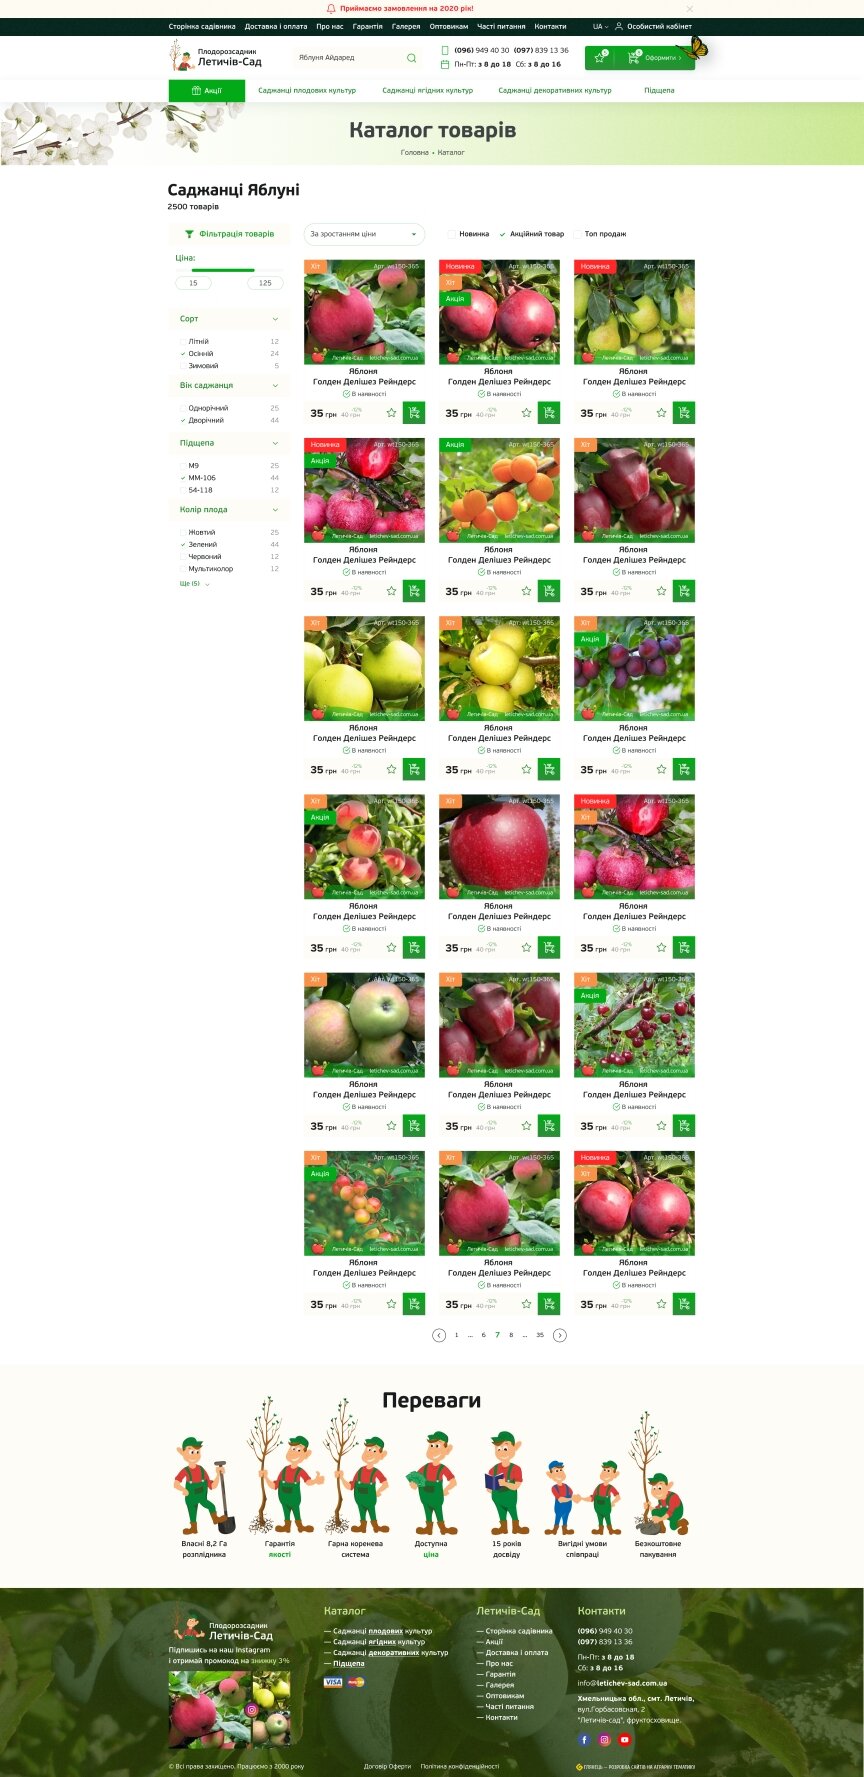 дизайн внутрішніх сторінкок на тему Аграрна промисловість — Інтернет-магазин для Летичів-сад 7